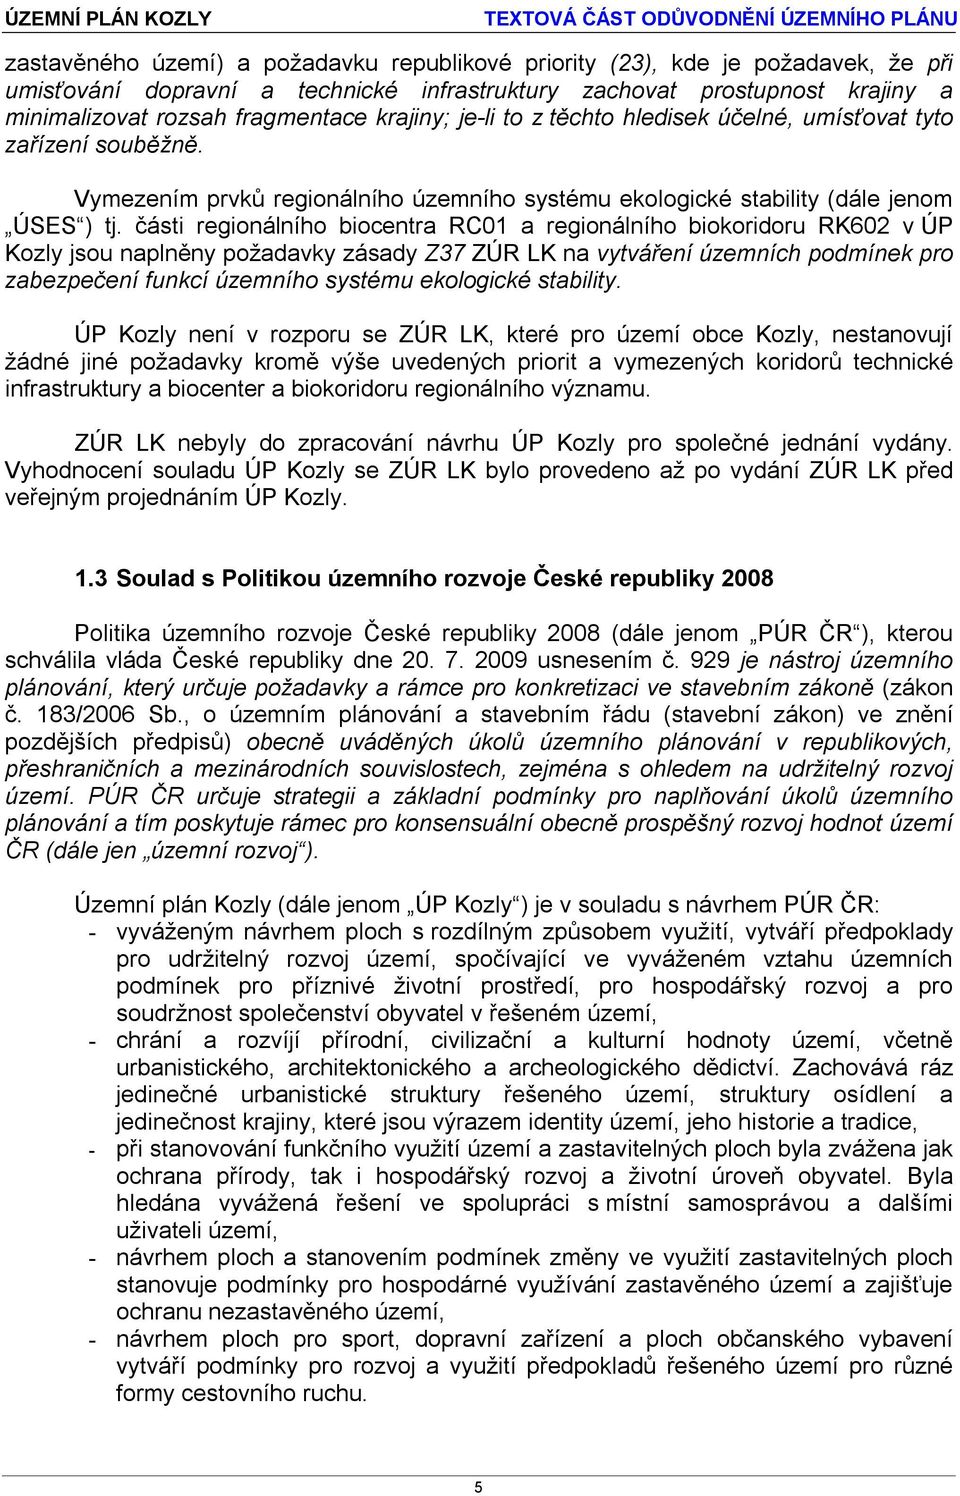 části regionálního biocentra RC01 a regionálního biokoridoru RK602 v ÚP Kozly jsou naplněny požadavky zásady Z37 ZÚR LK na vytváření územních podmínek pro zabezpečení funkcí územního systému